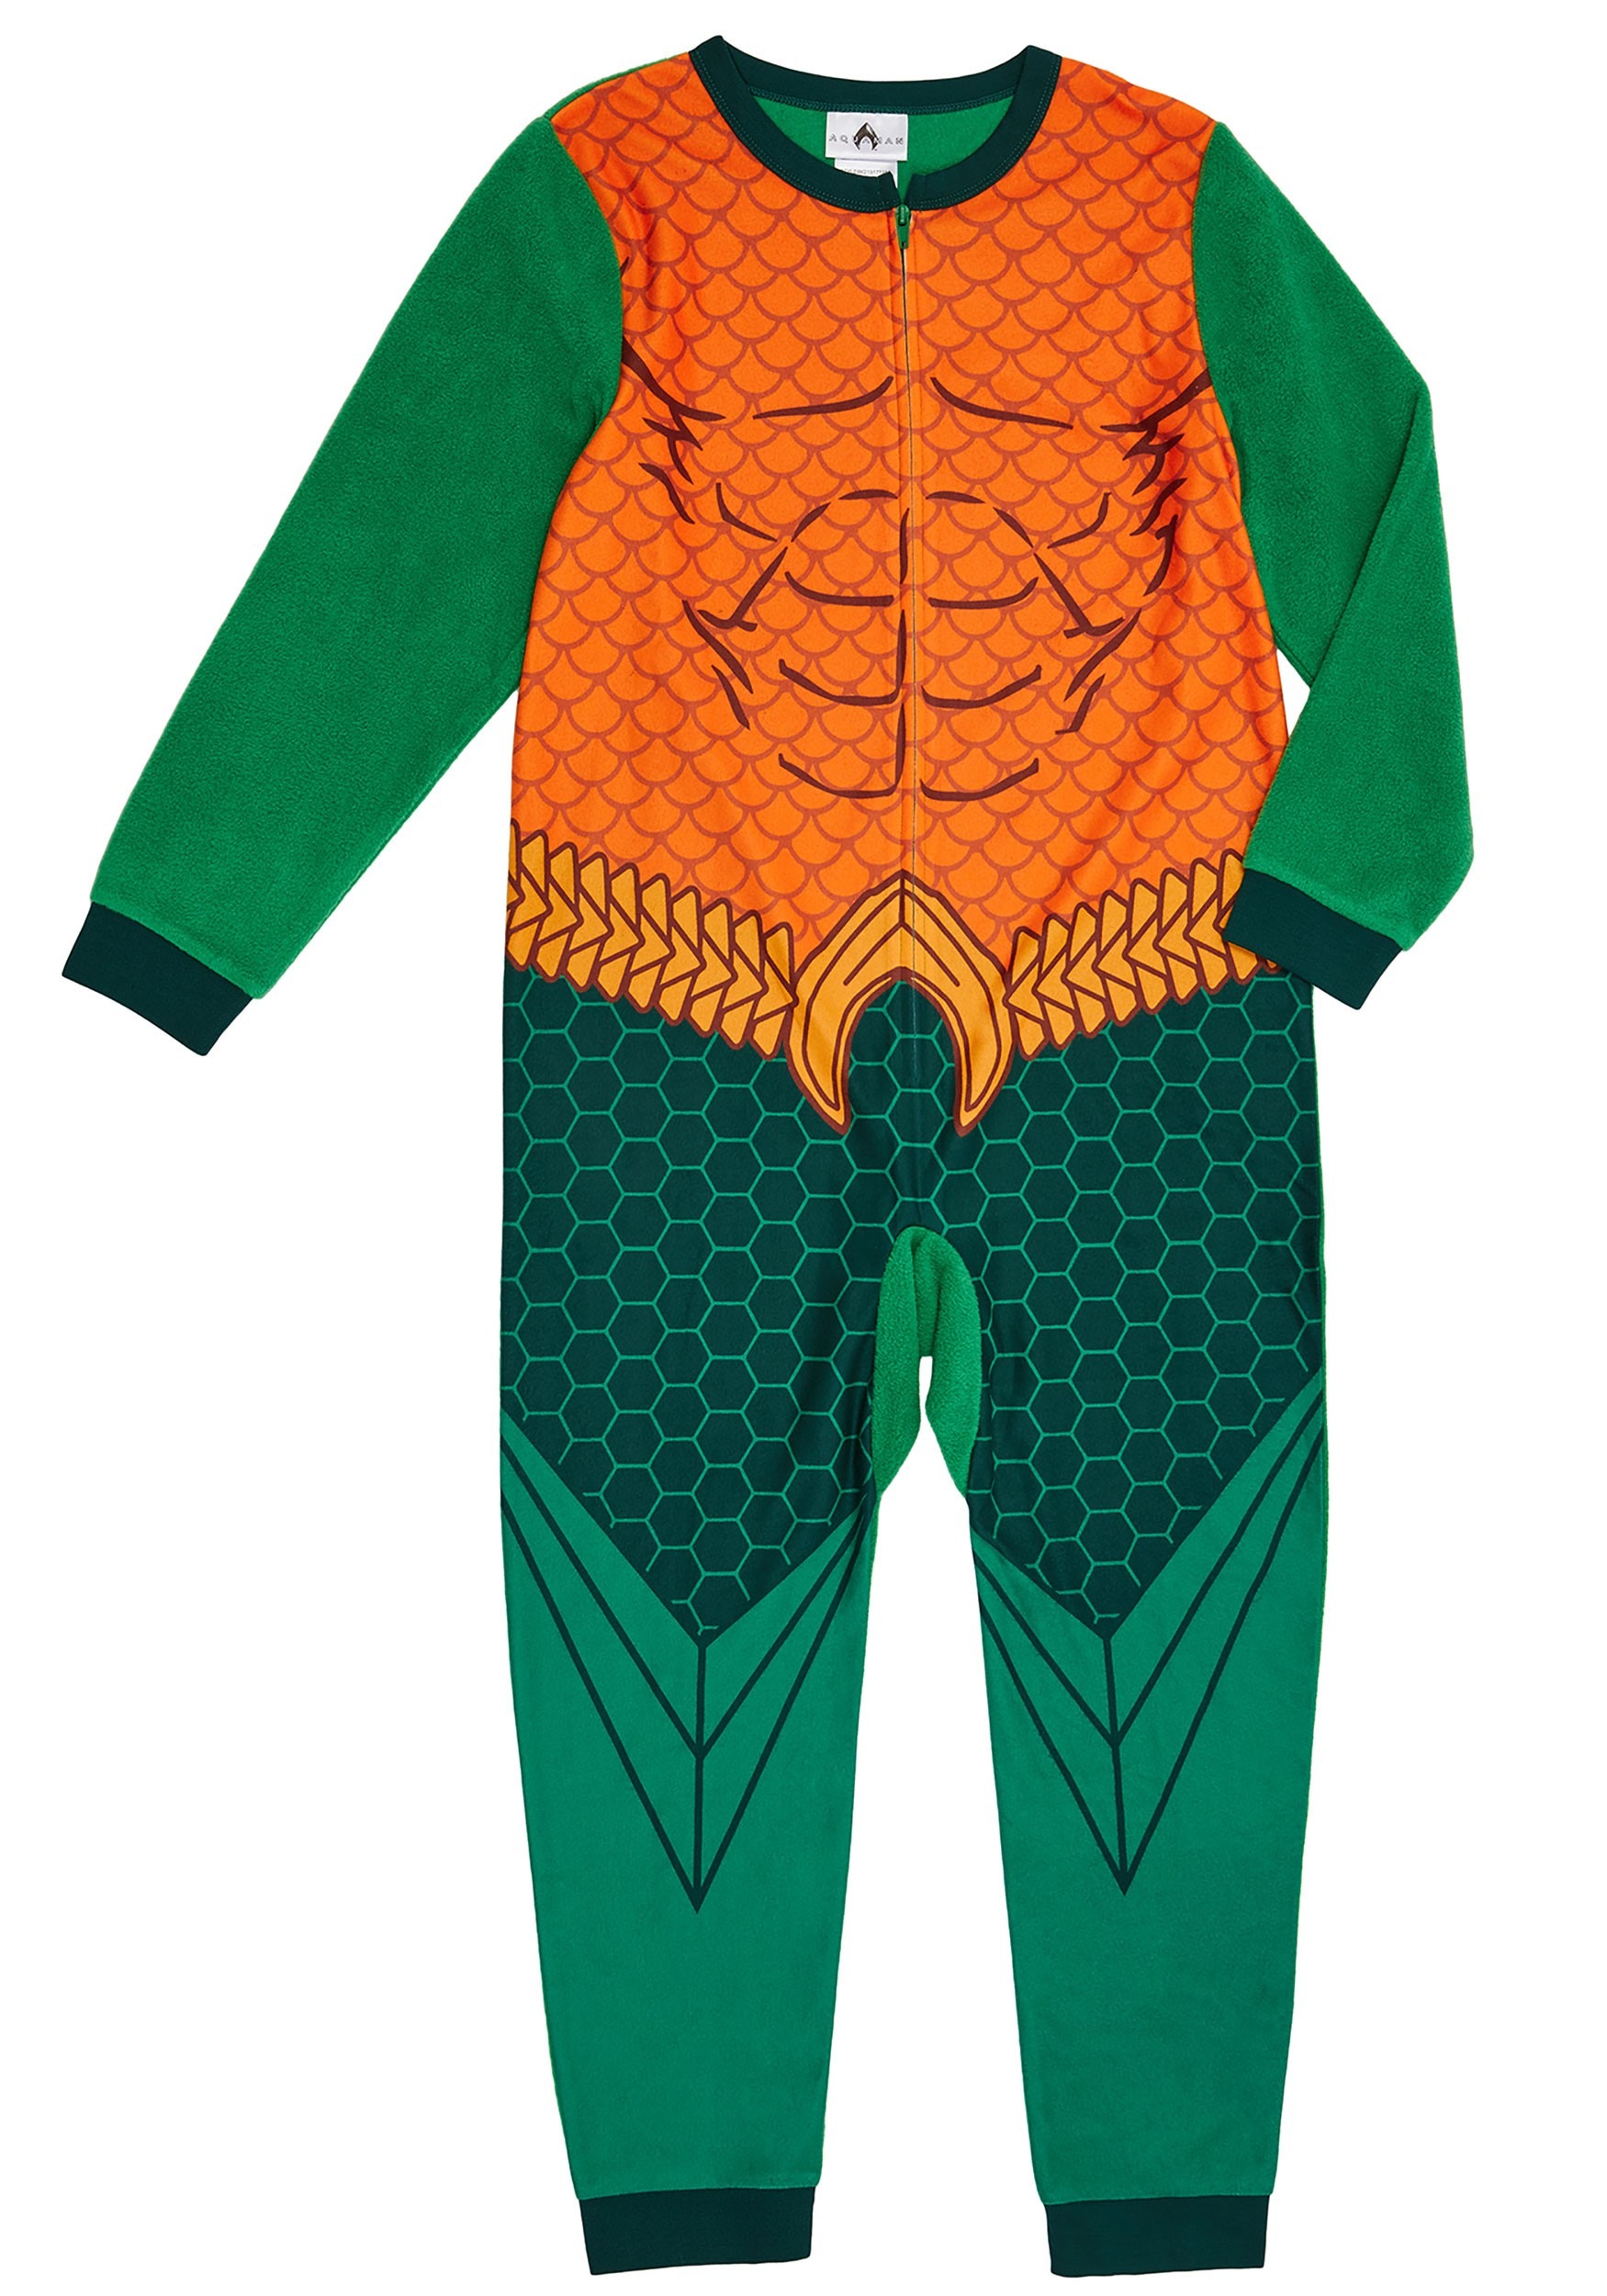 Boys Aquaman Union Suit Costume